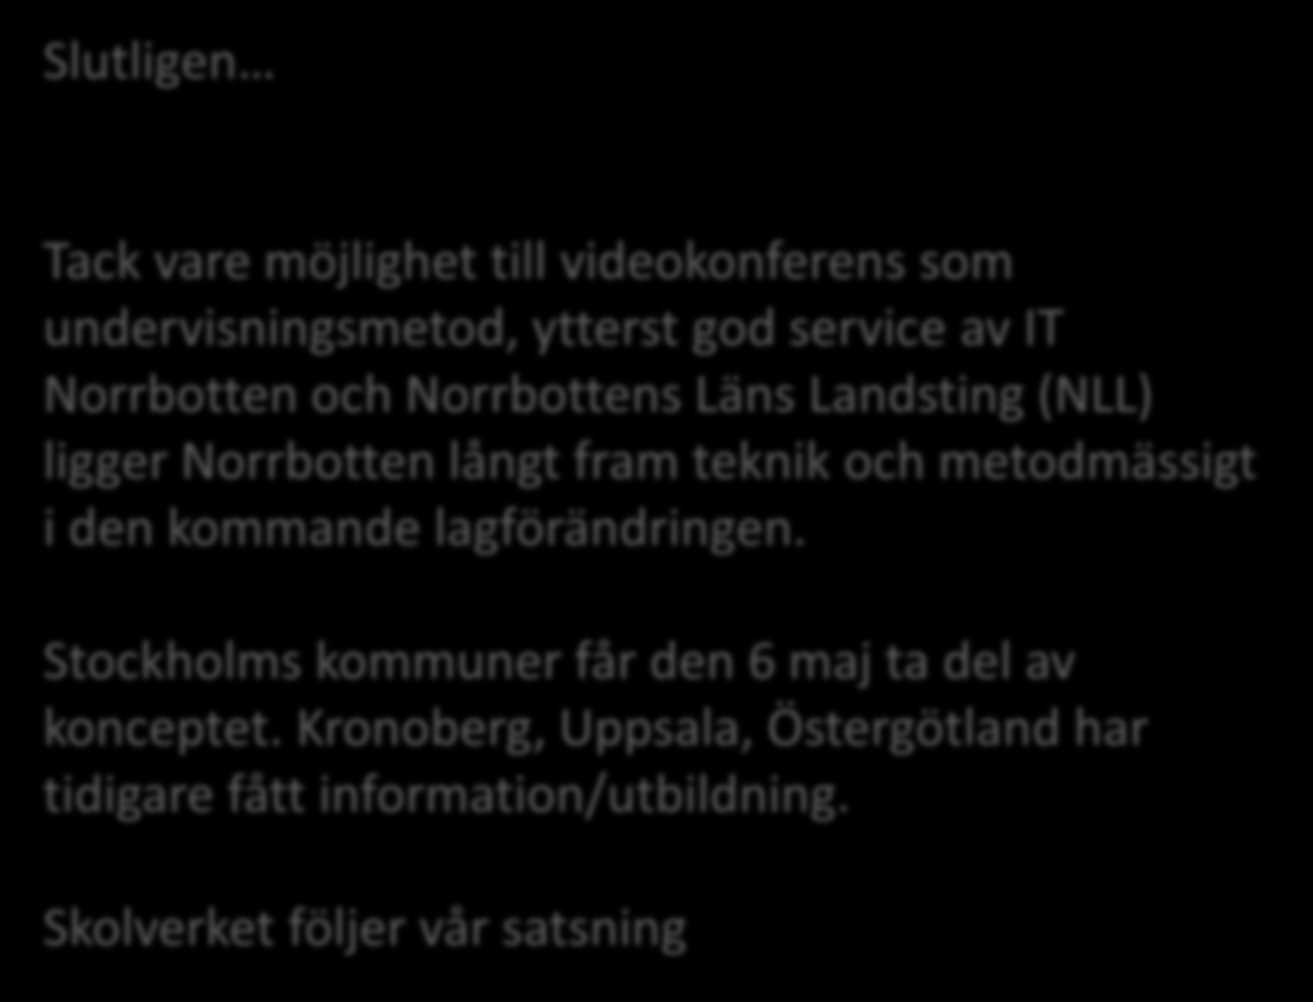 Slutligen Tack vare möjlighet till videokonferens som undervisningsmetod, ytterst god service av IT Norrbotten och Norrbottens Läns Landsting (NLL) ligger Norrbotten långt fram teknik och